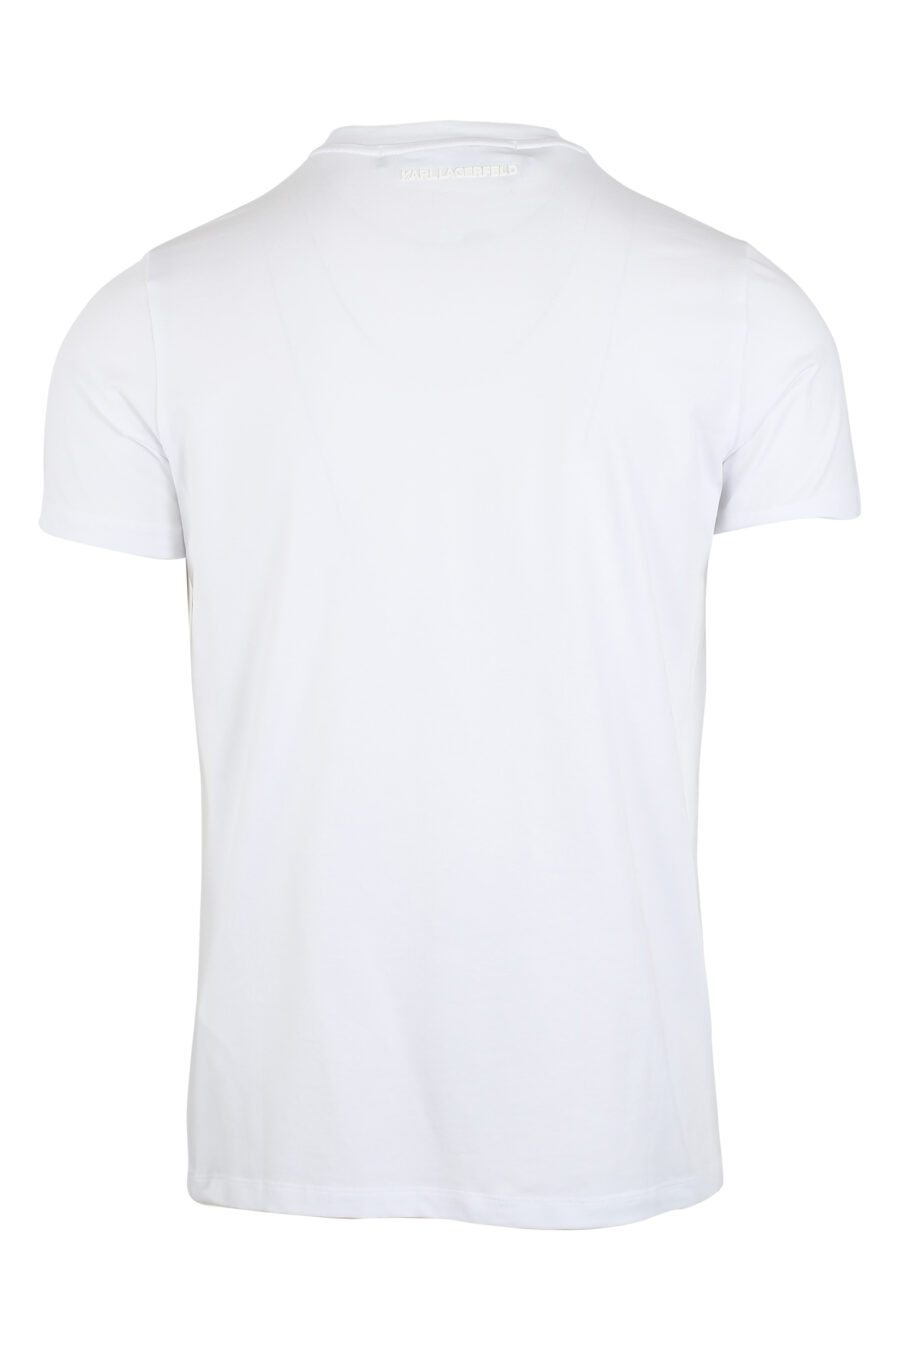 Camiseta blanca con logo efecto holograma - IMG 9487